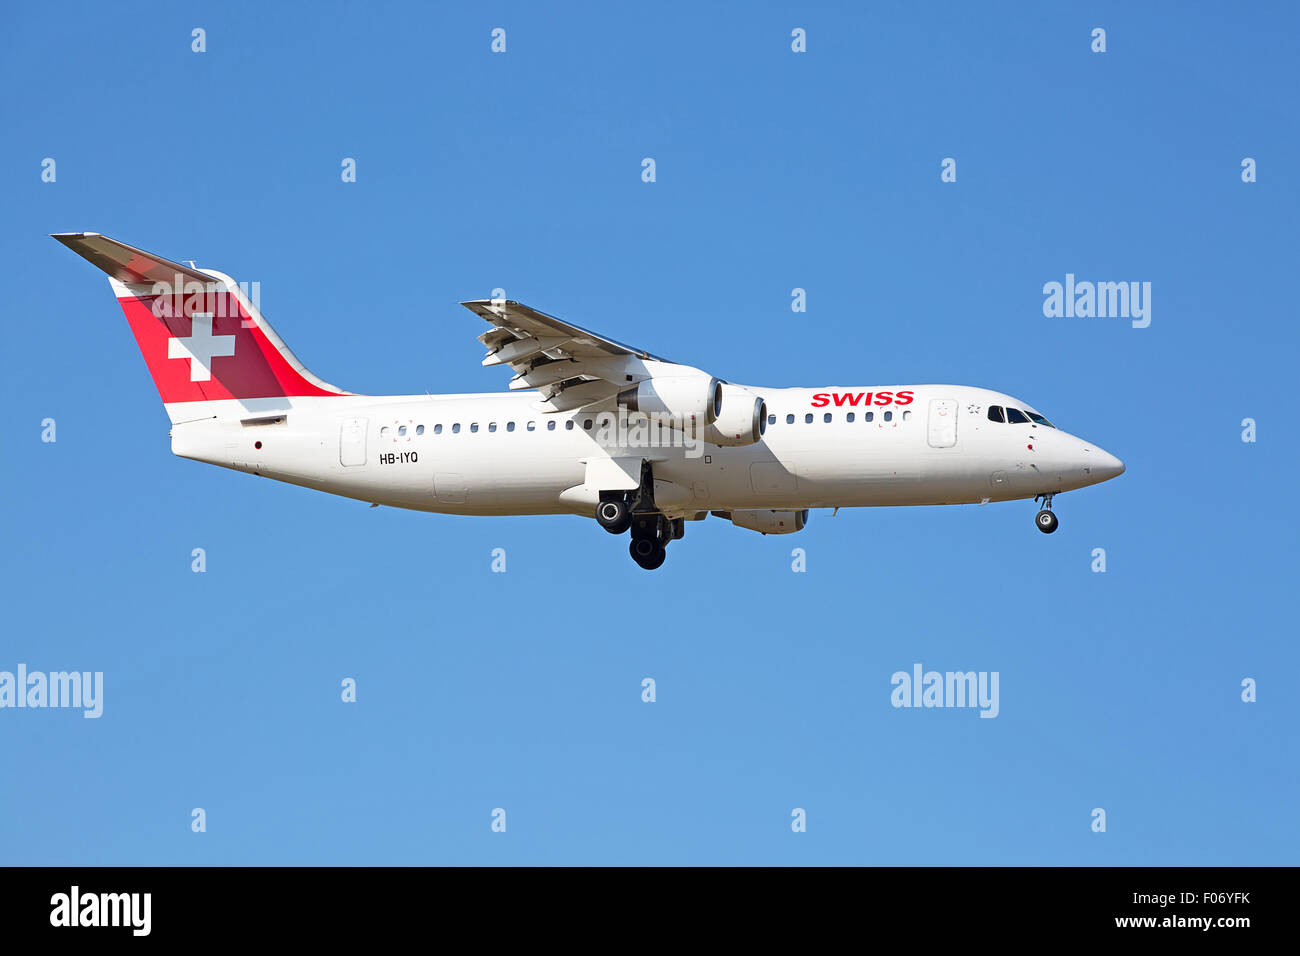 ZURICH - JULY 18: AVRO RJ100 landing in Zurich airport after short haul flight on July 18, 2015 in Zurich, Switzerland. Zurich a Stock Photo